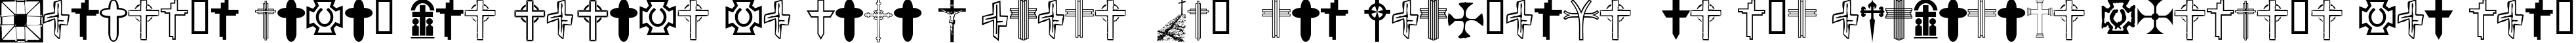 Пример написания шрифтом Christian Crosses V текста на испанском